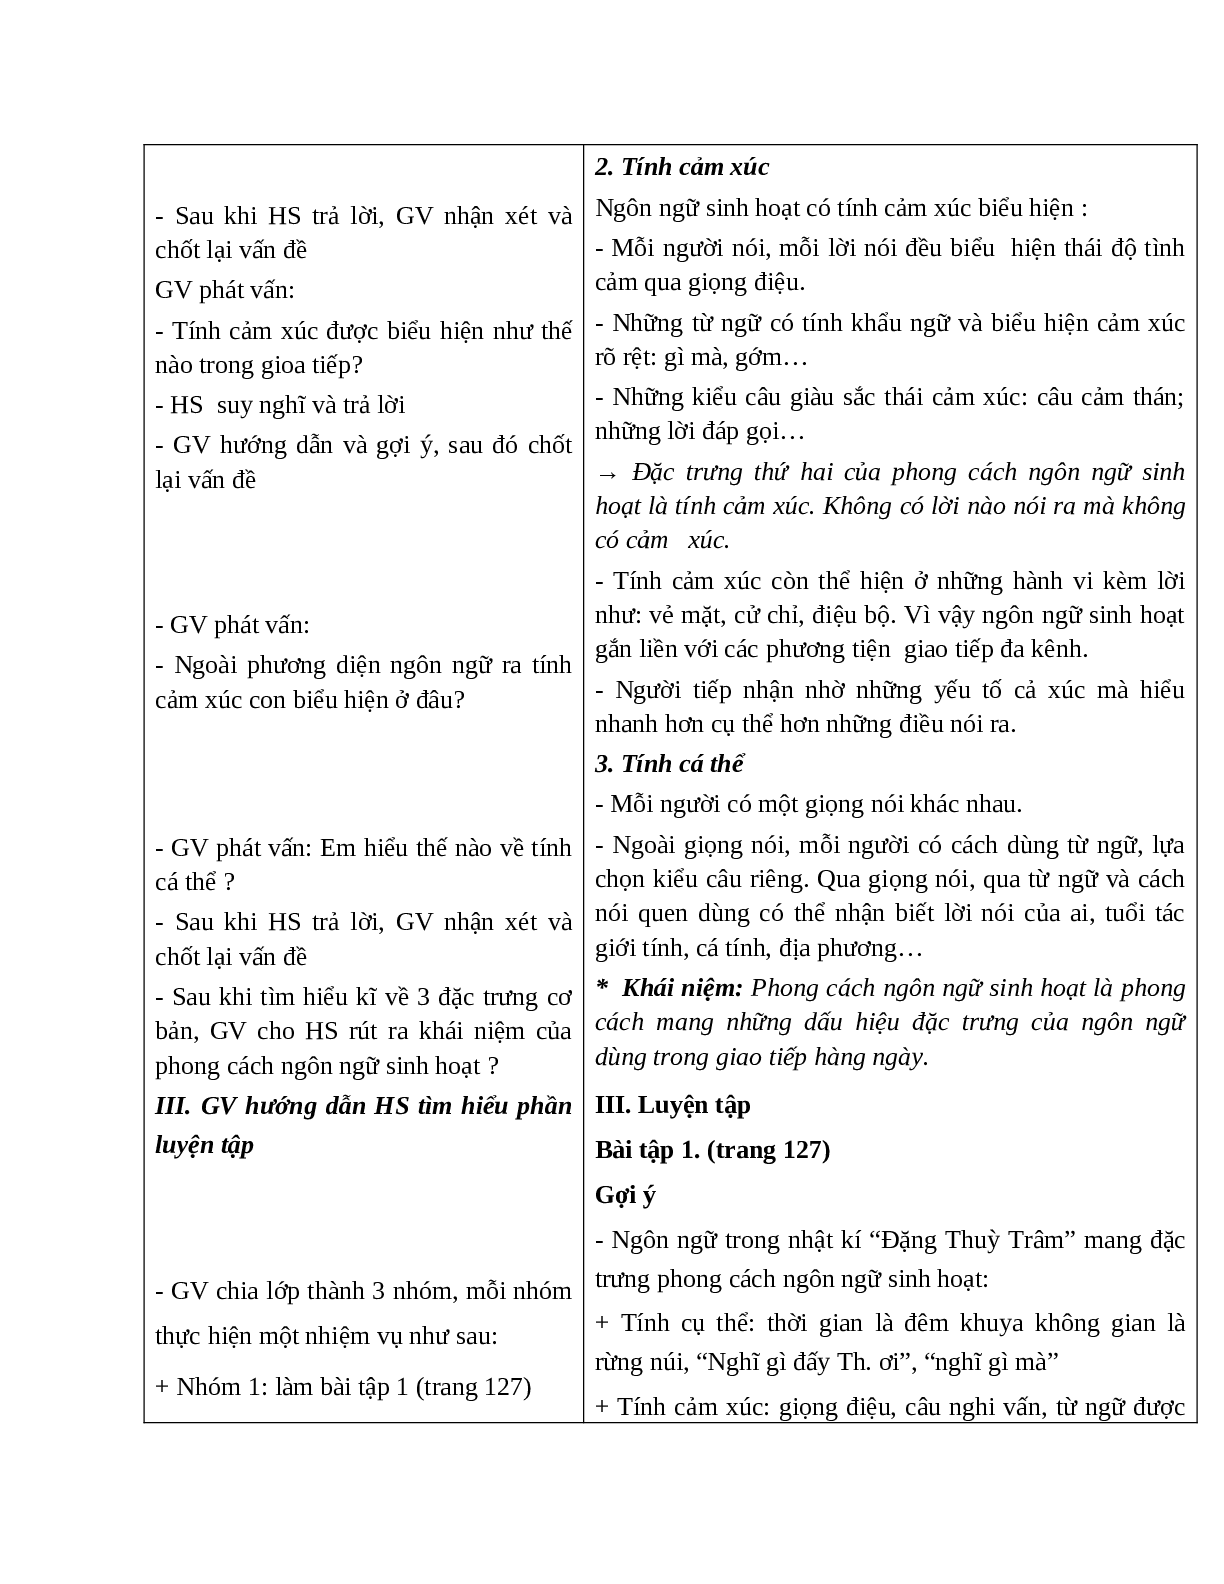 Giáo án Ngữ văn 10 tập 1 bài Phong cách ngôn ngữ sinh hoạt mới nhất (trang 4)